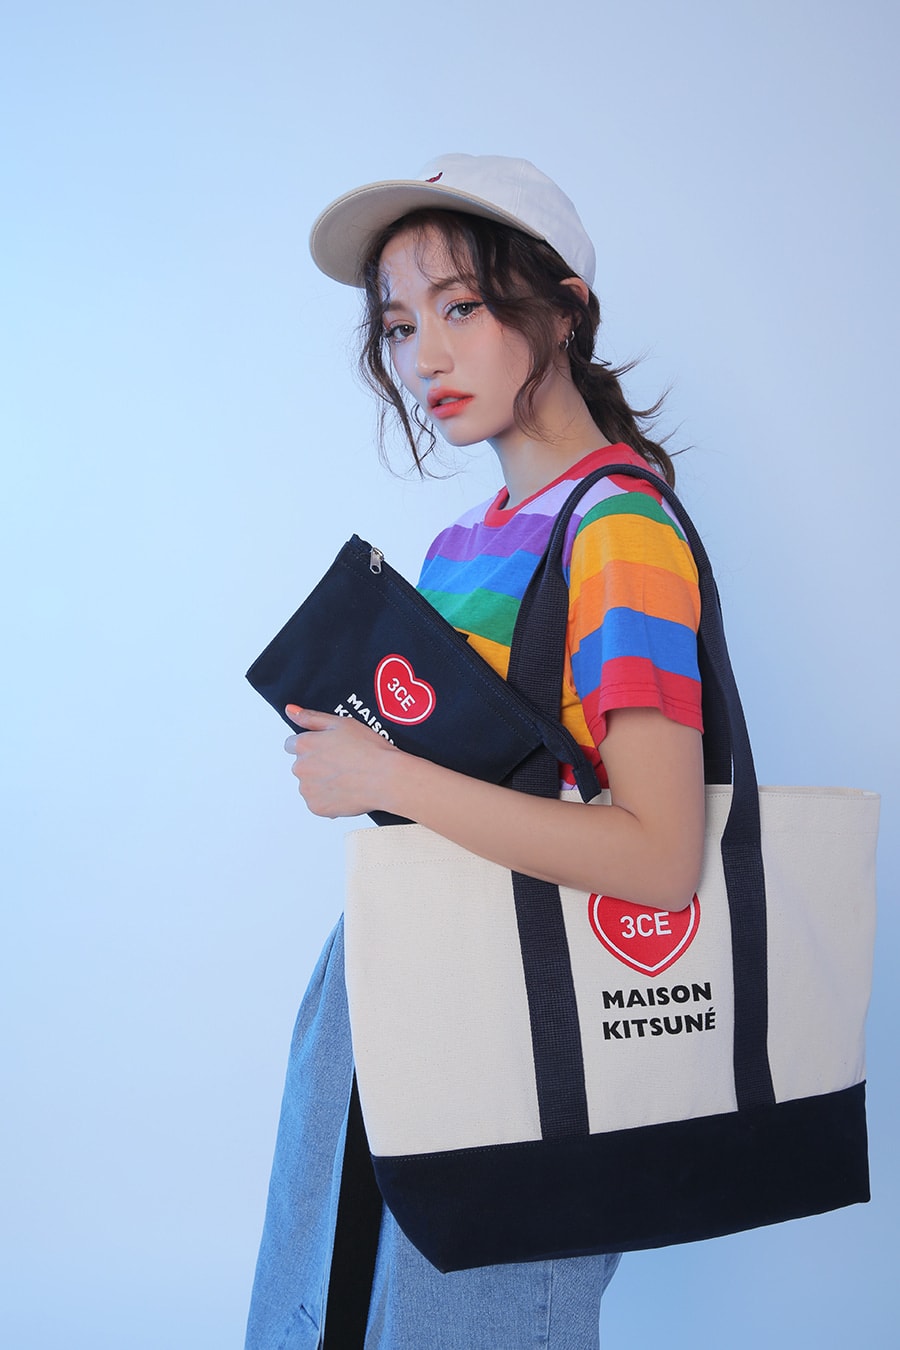 Maison Kitsuné 3CE Stylenanda Makeup Collection Korean Beauty Pouch Canvas Tote Bag